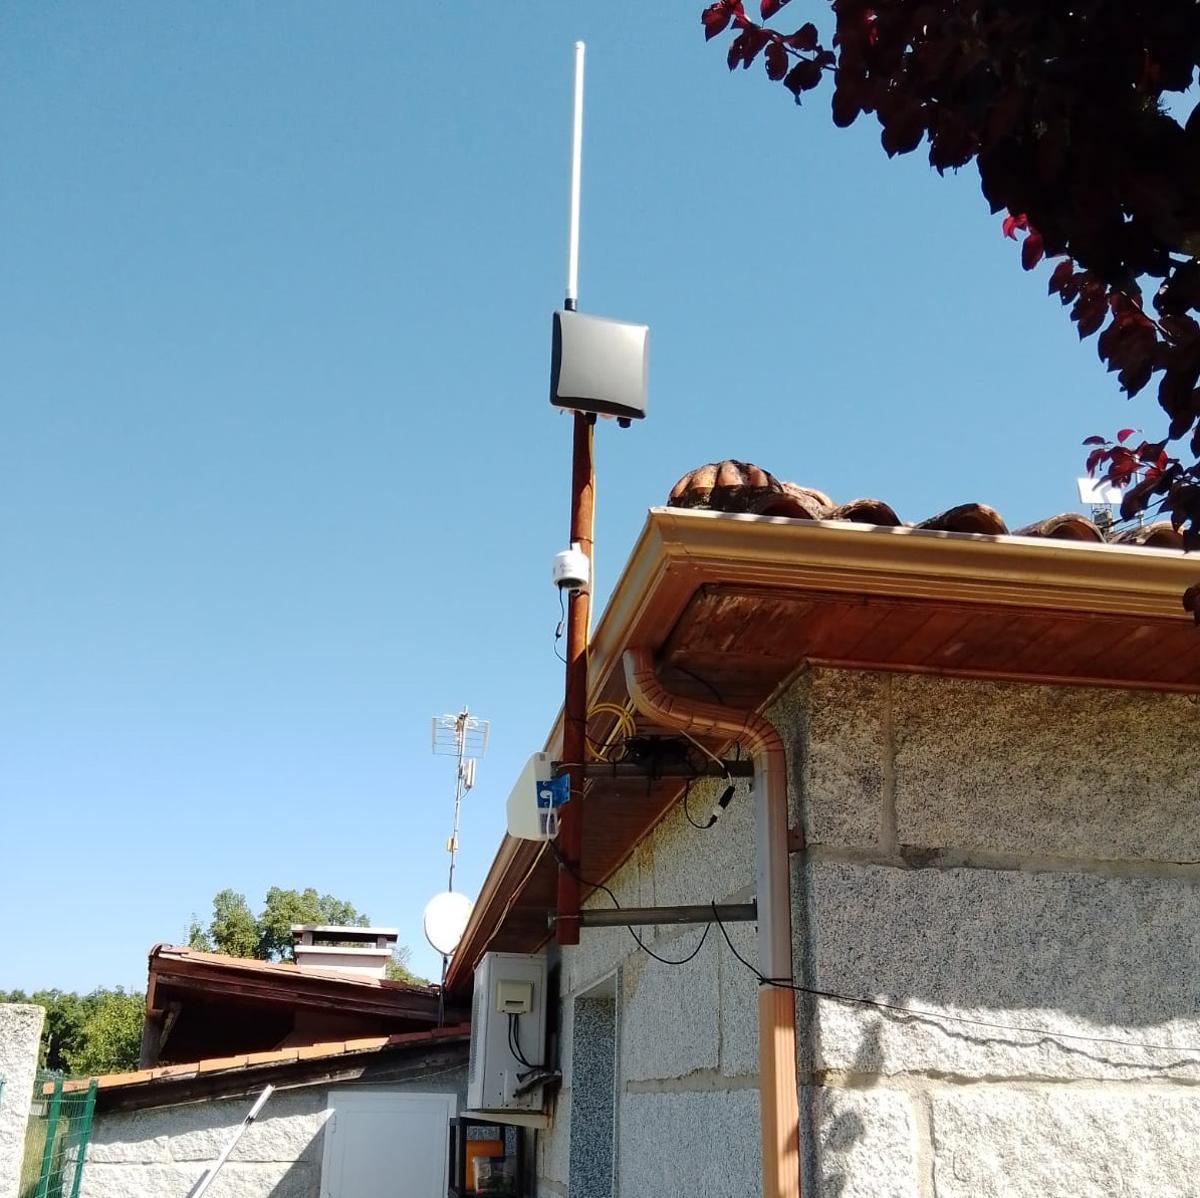 La estación base, instalada en el local de la asociación vecinal, recibe los datos que emiten los dispositivos LoRa.